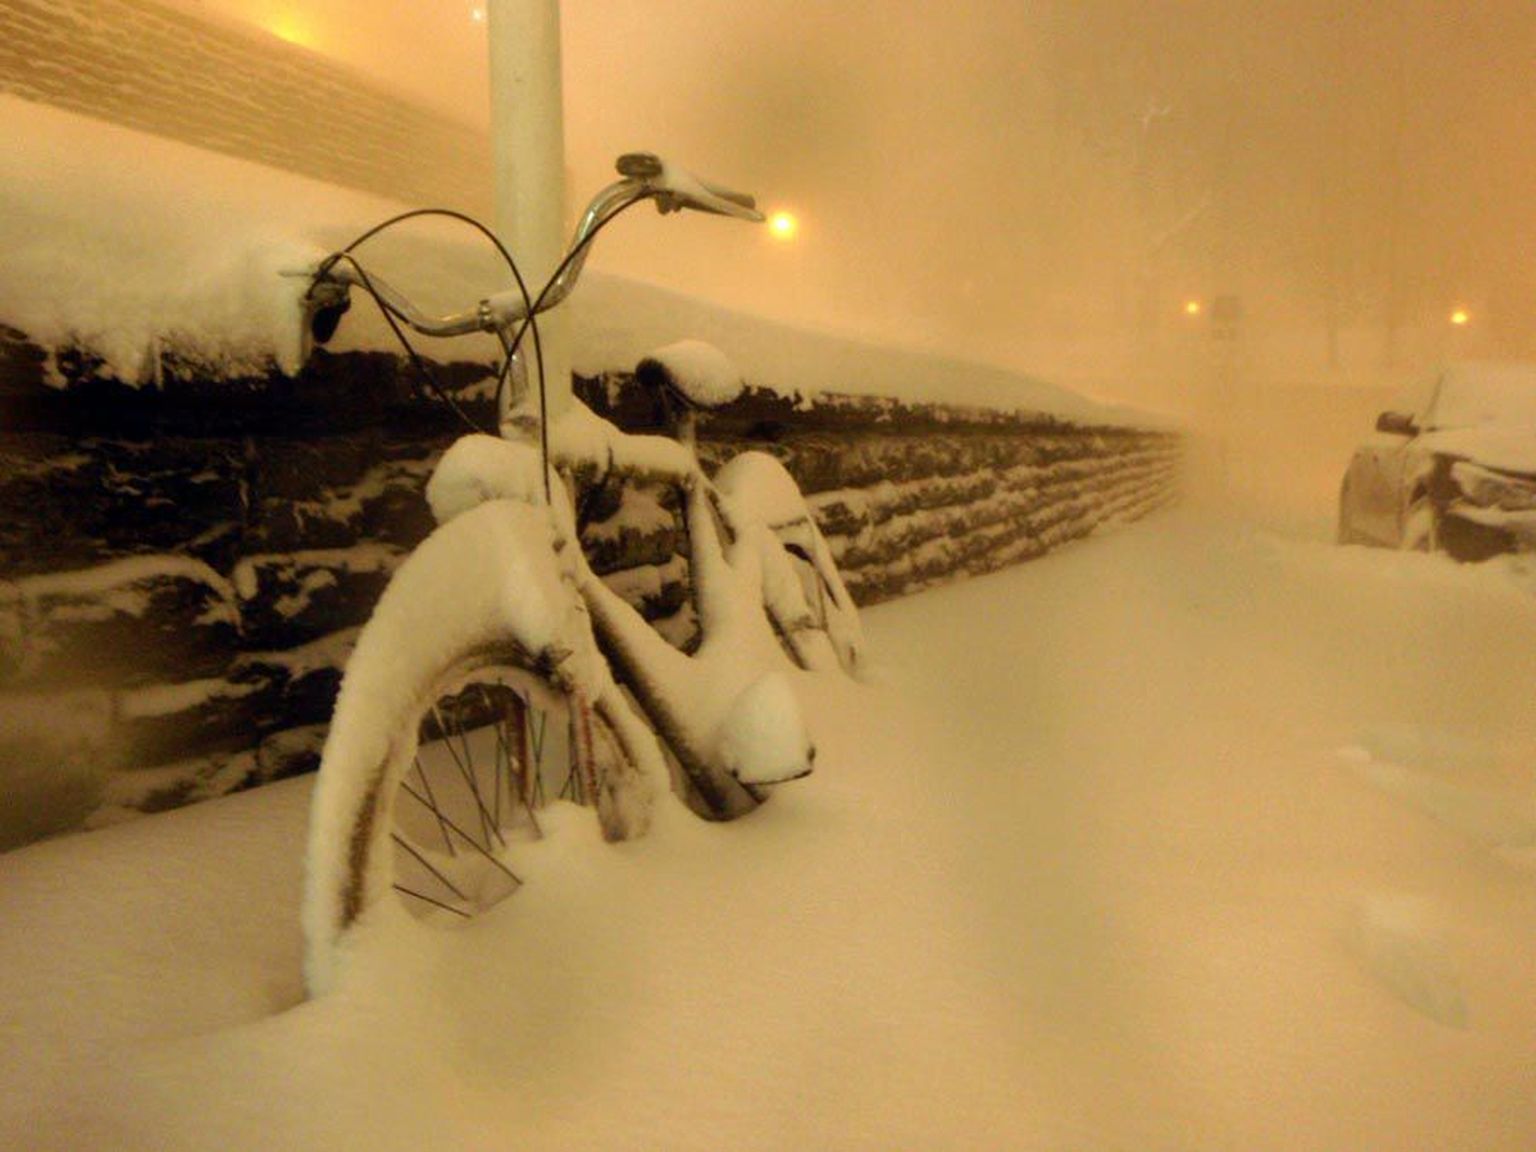 Lume alla jäänud jalgratas Tartus Vanemuise teatri juures.